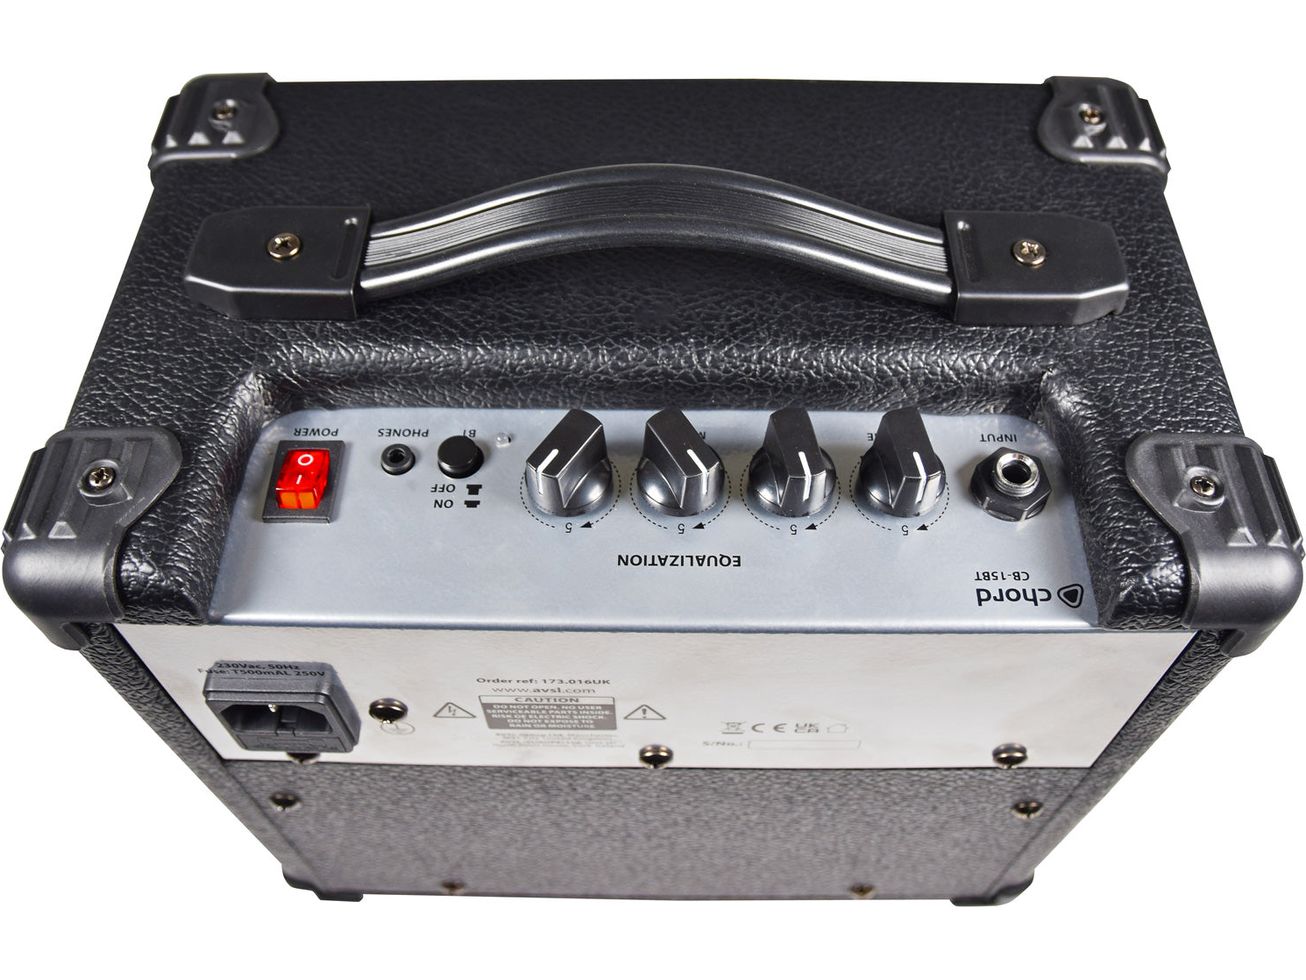 Chord CB-15BT Bass Amplifier with Bluetooth®